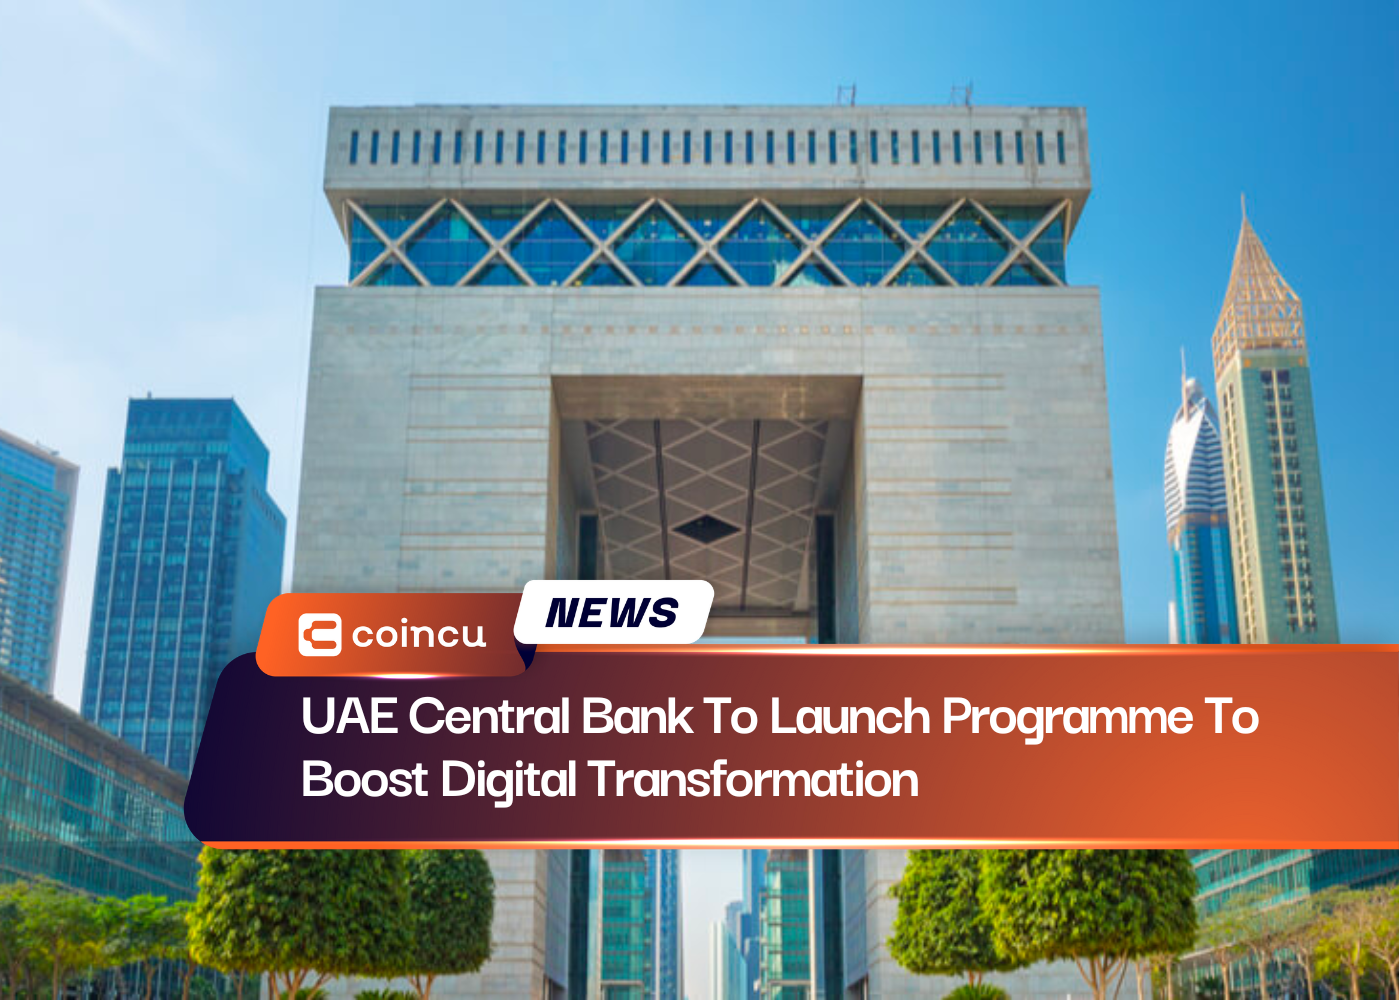 Центральный банк ОАЭ запустит программу по ускорению цифровой трансформации